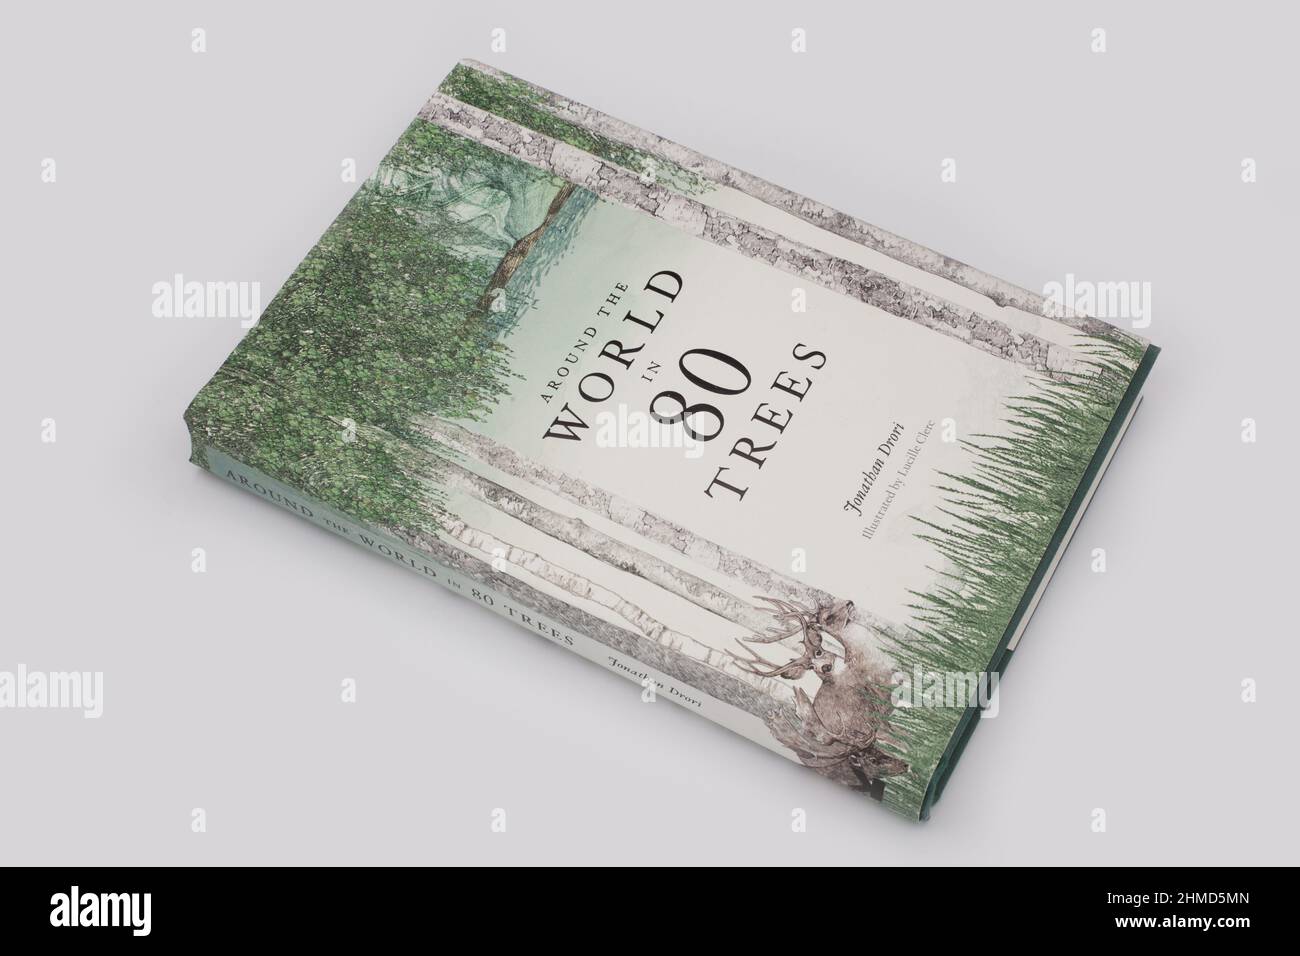 Il libro, intorno al mondo in 80 alberi di Jonathan Drori e Lucille Clerc Foto Stock